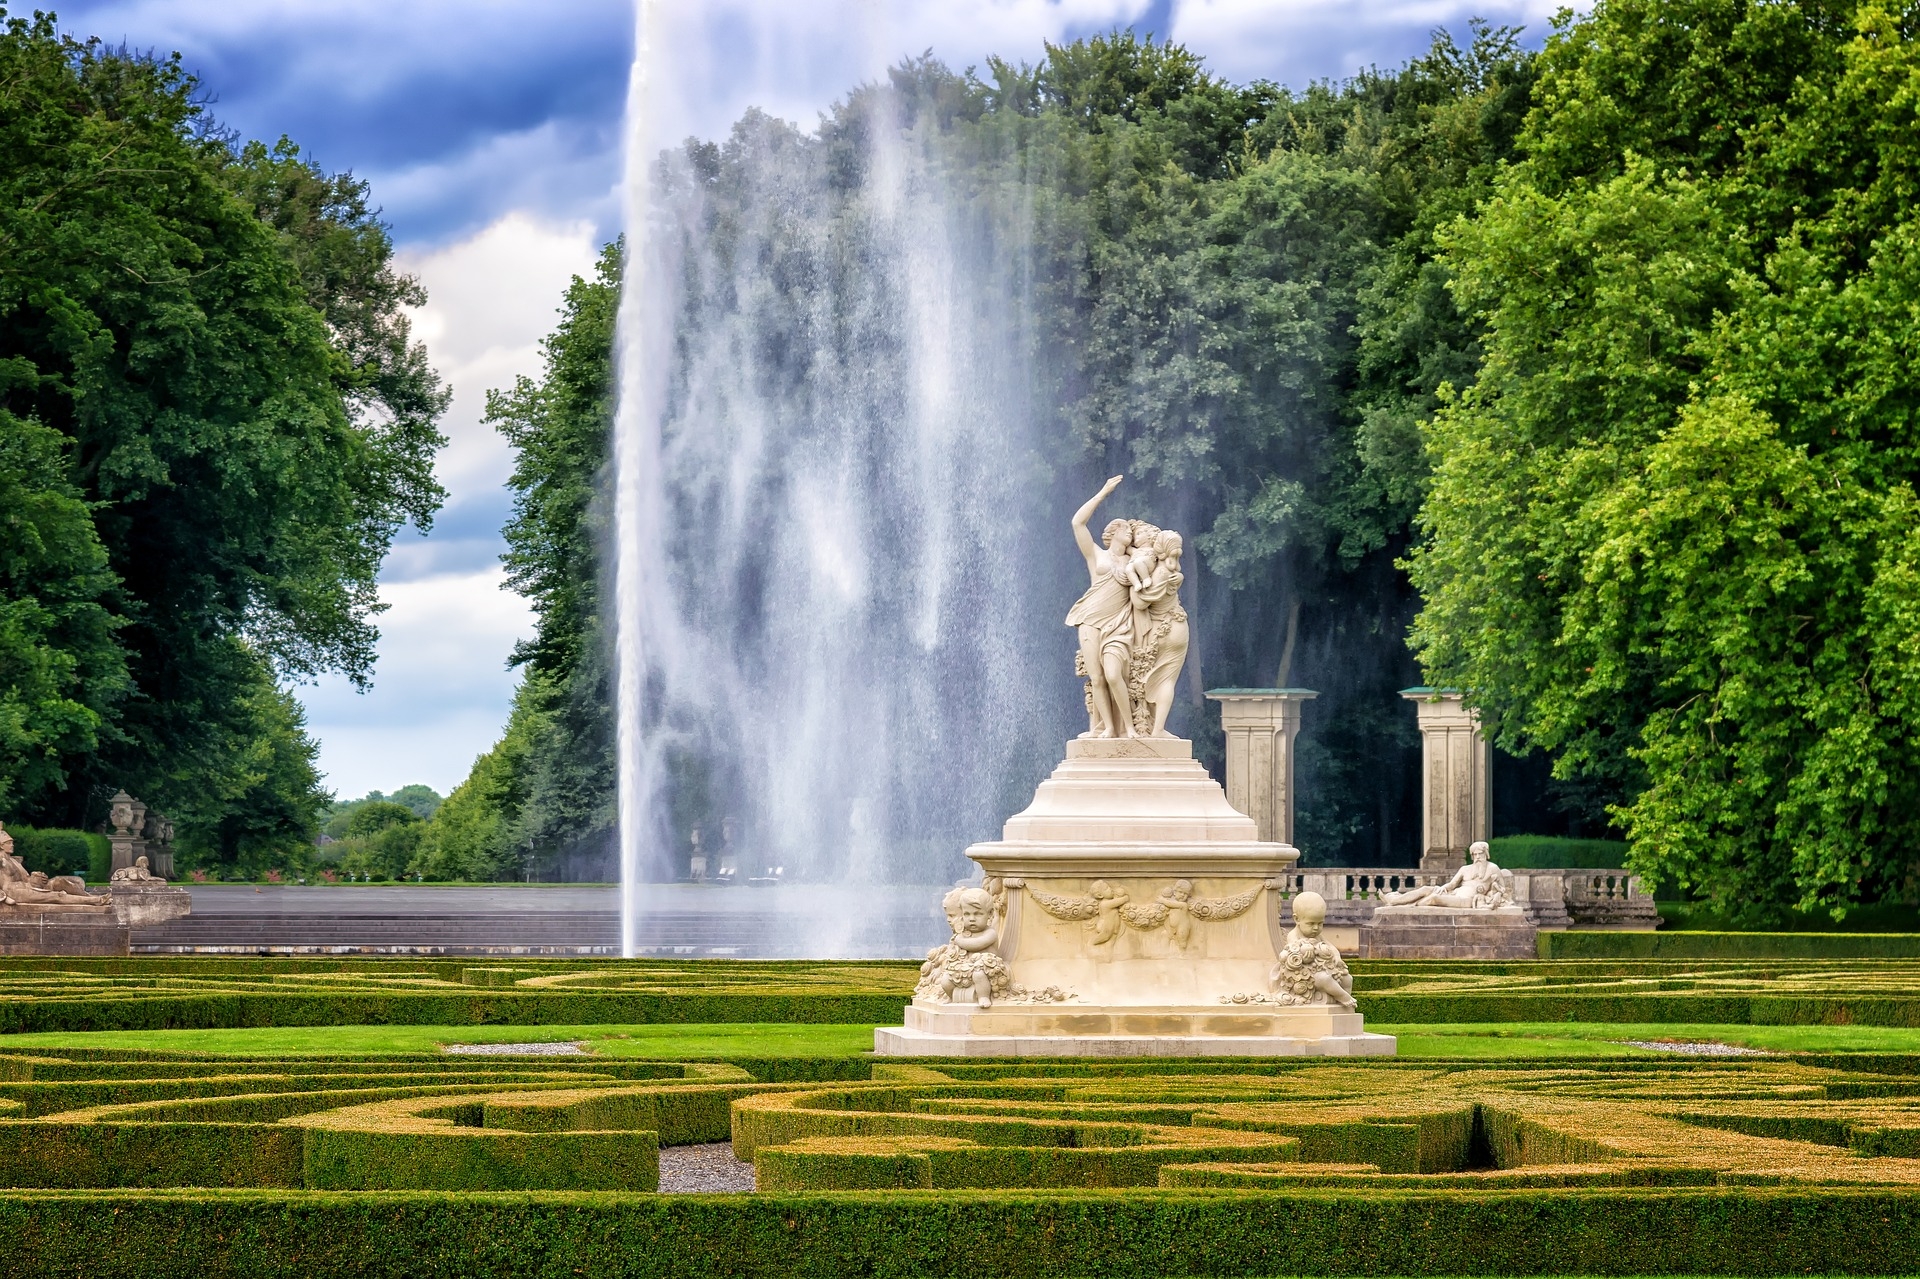 https://pixabay.com/en/park-castle-sculpture-fountain-2594142/